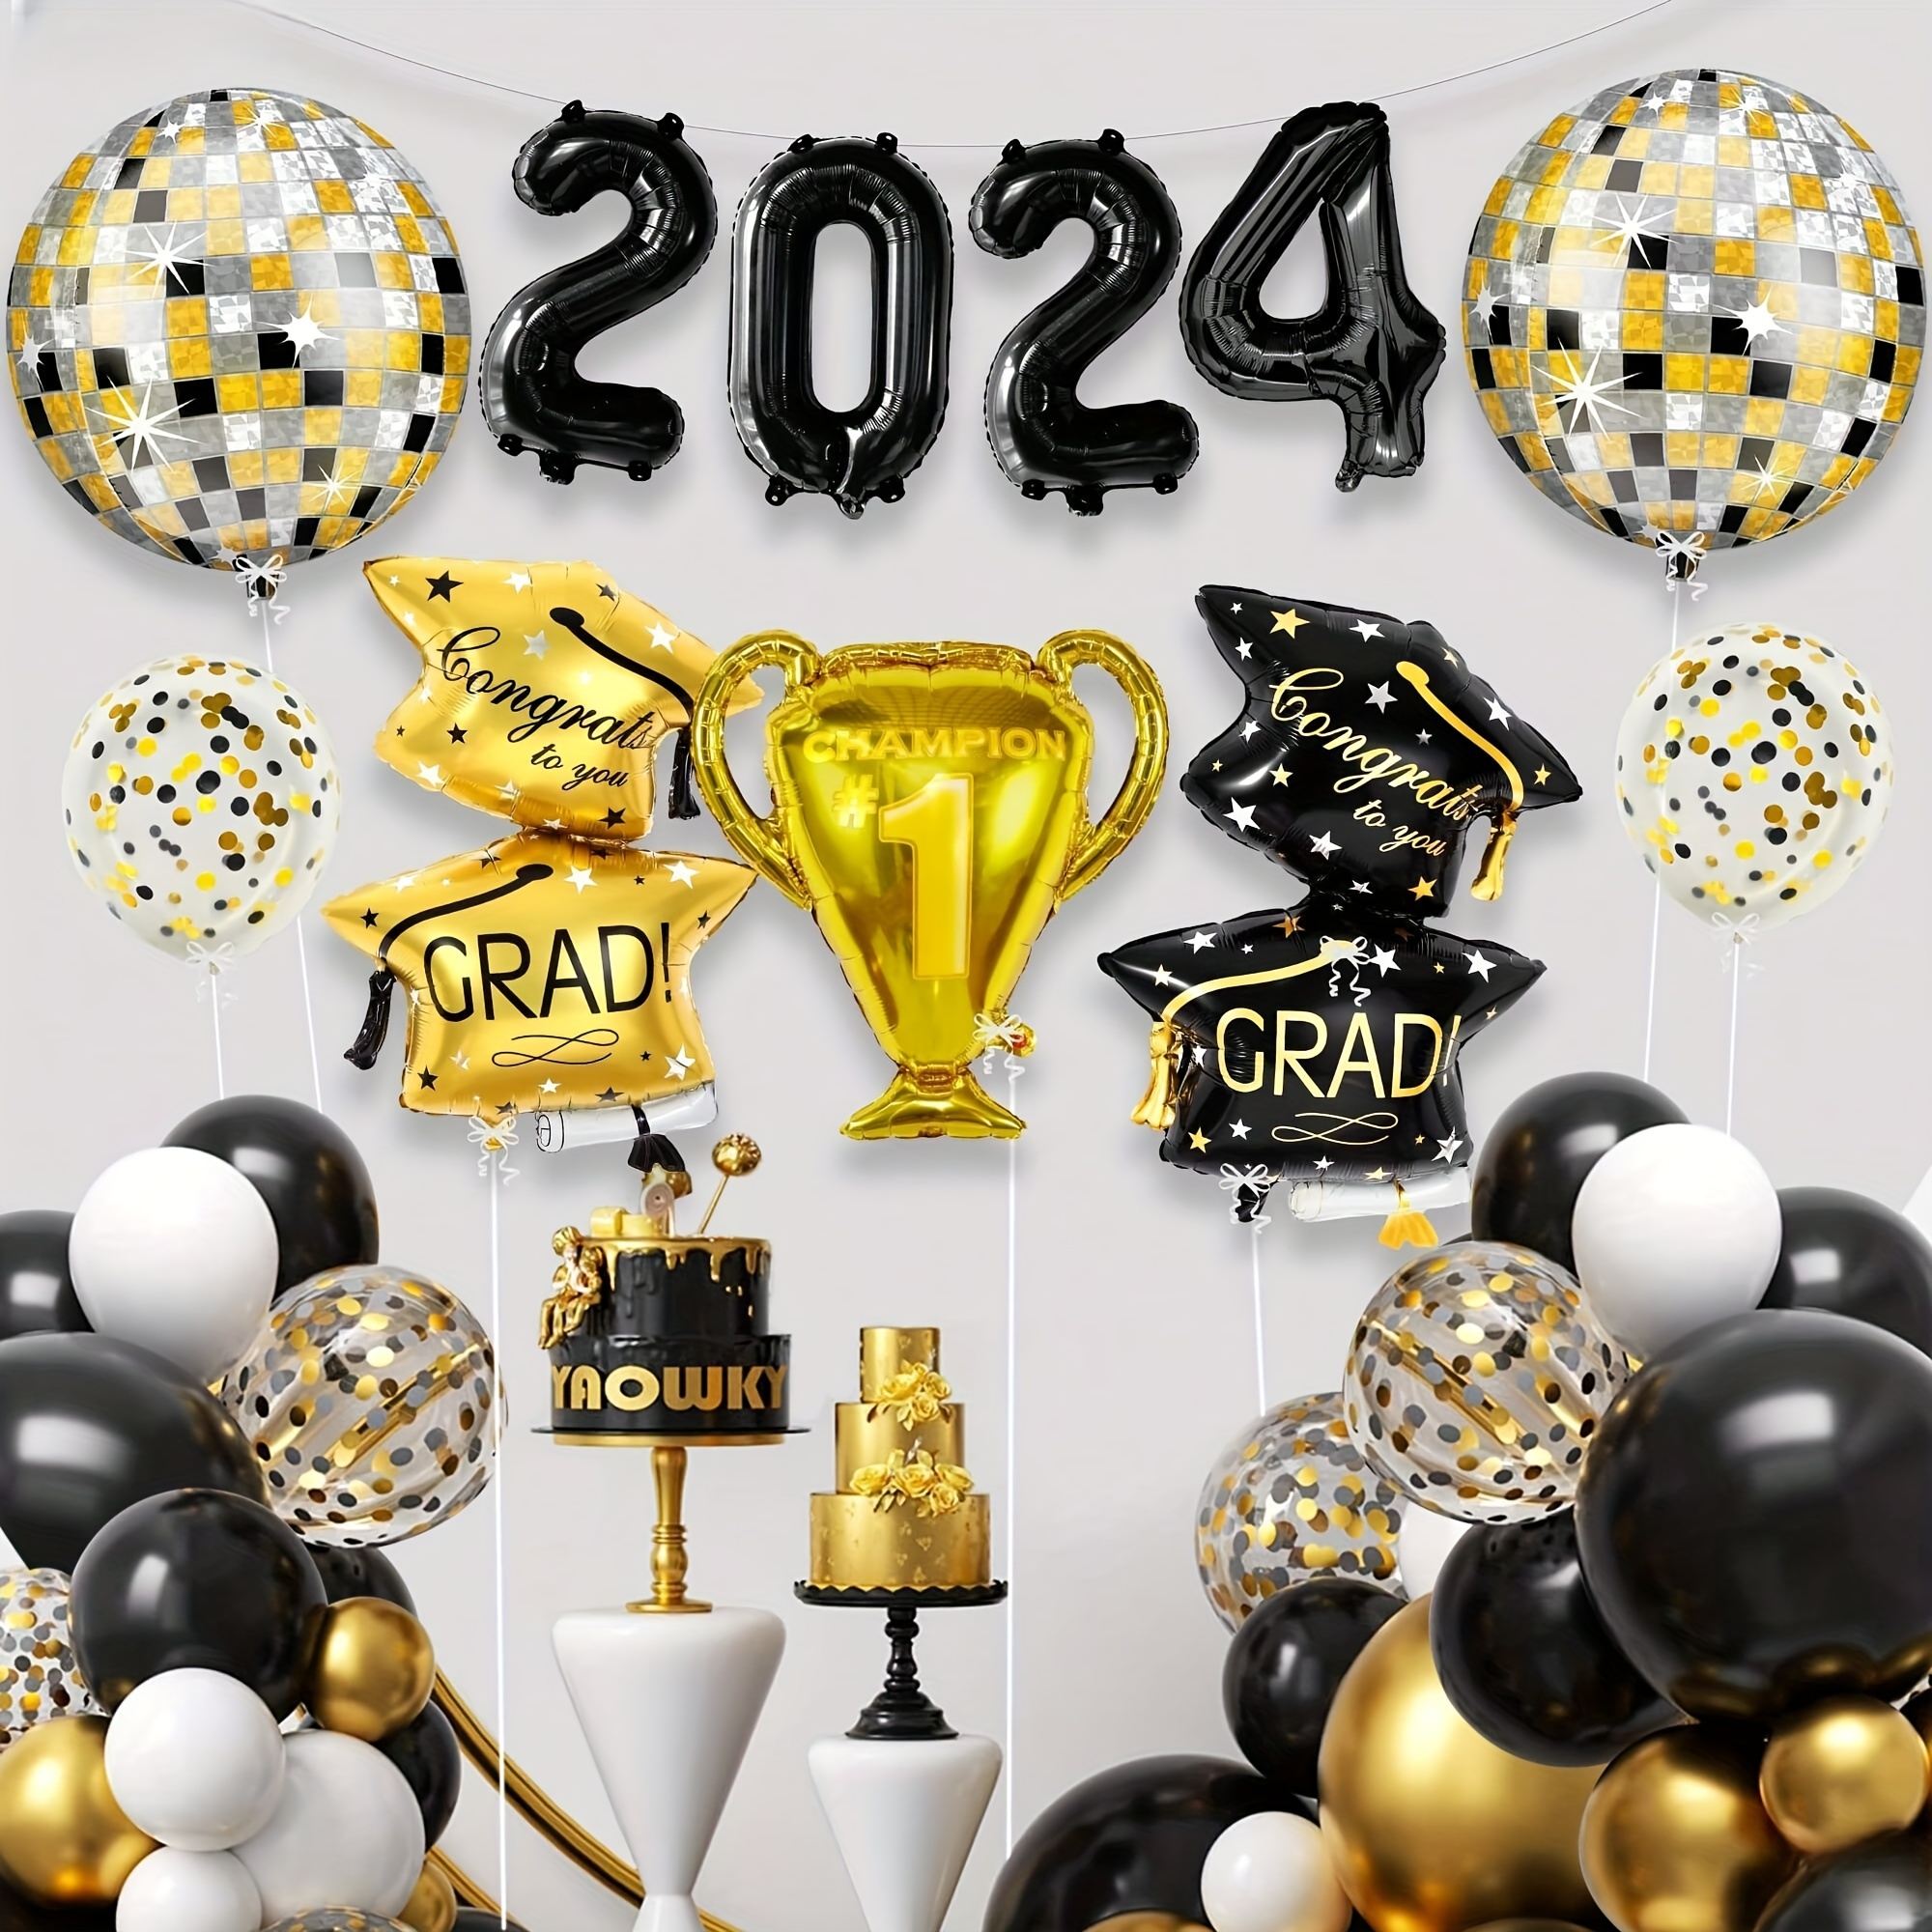 

11pcs, Graduation Party Balloons Kit, Black And Golden, 2024 Graduation Theme Decorations, Congrats Grad & Champion Trophy Design, Festive Decor For Grad Celebration